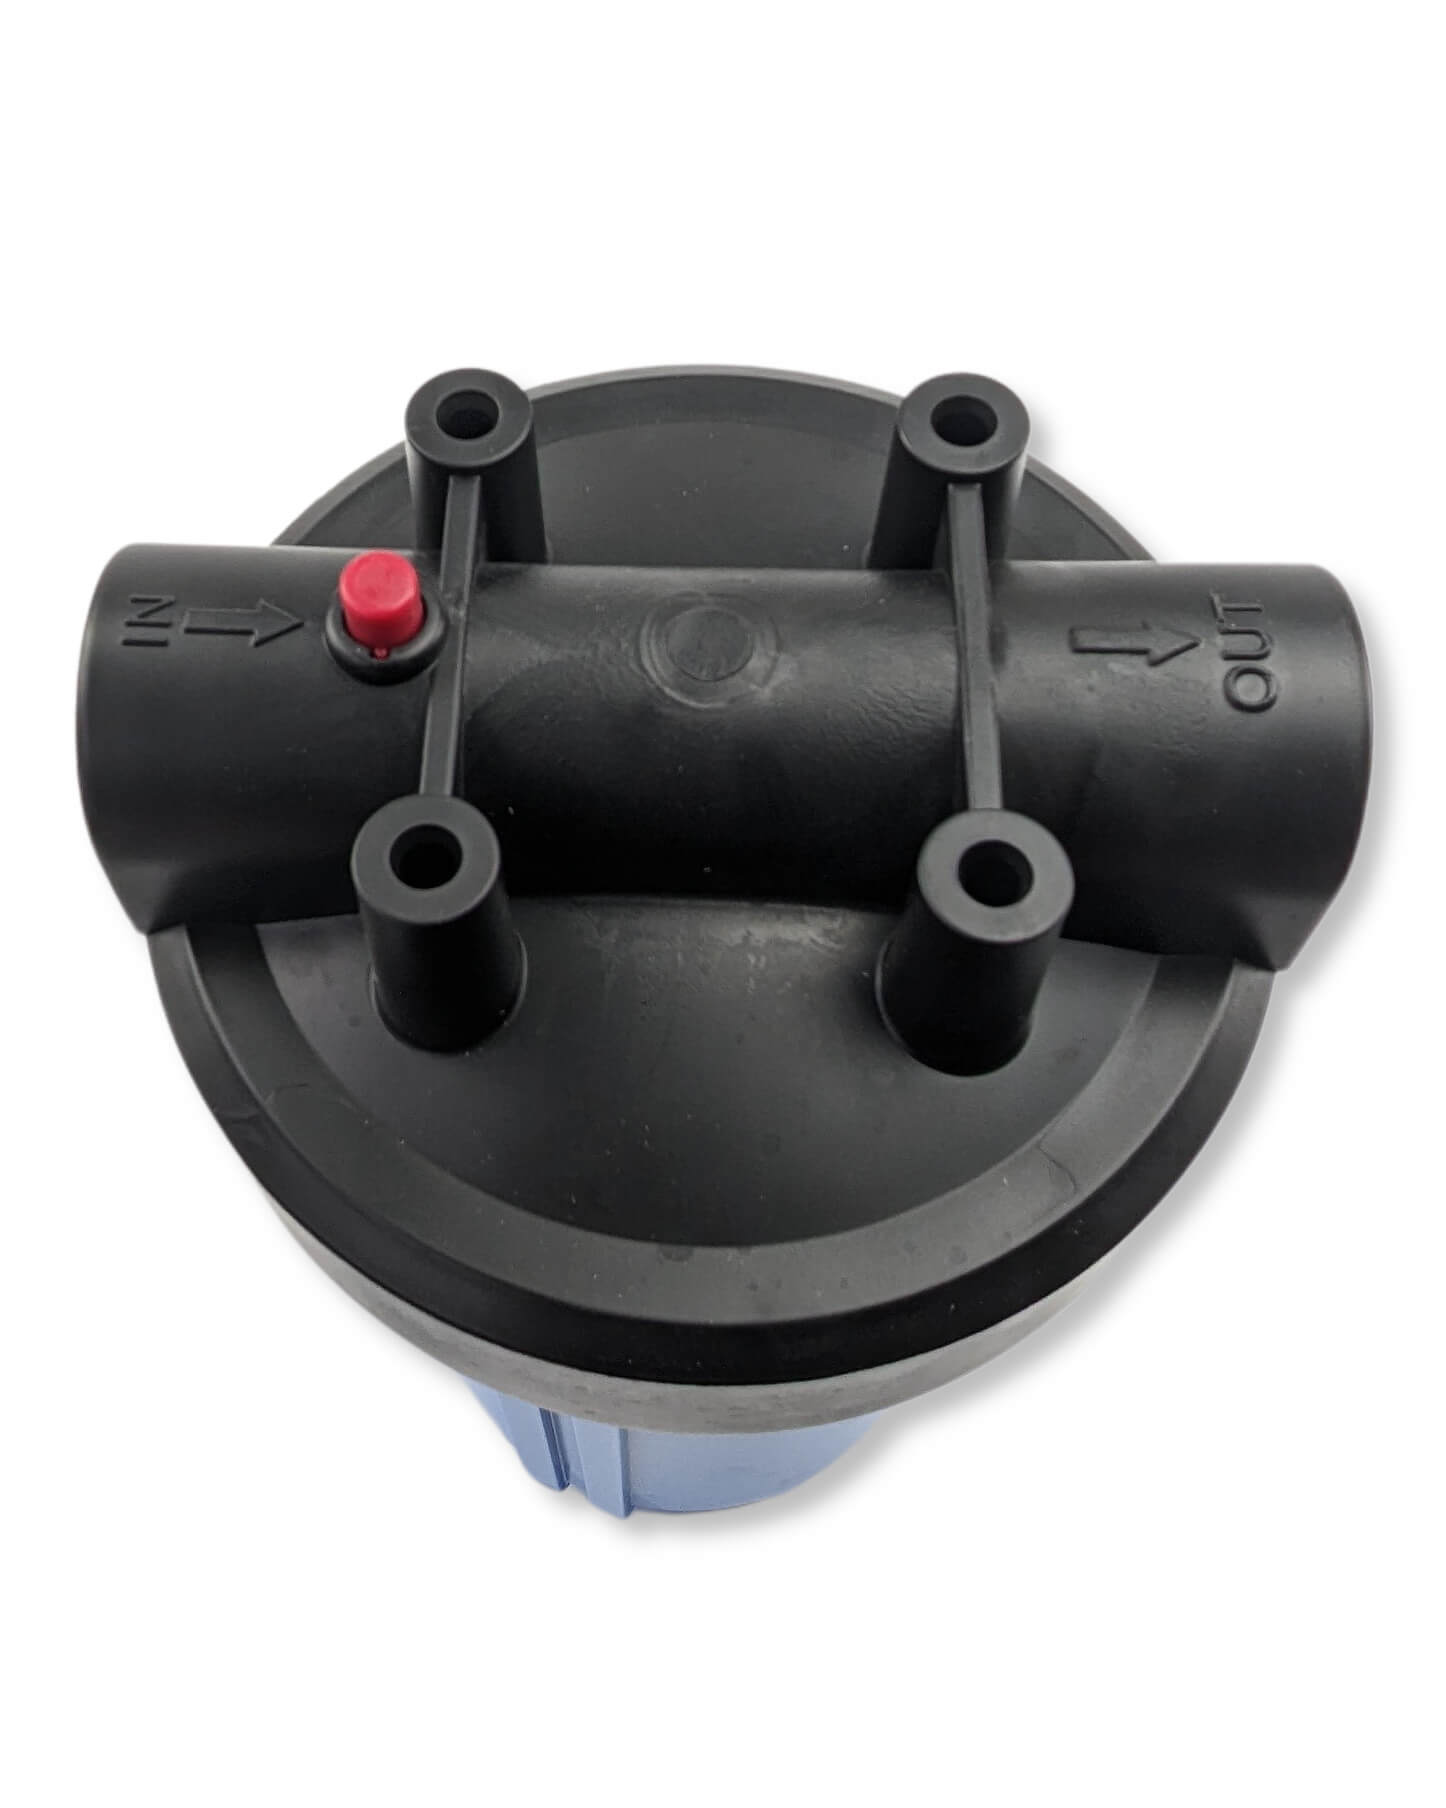 Eine schwarze Kunststoff-Wasserpumpe der PURION GmbH mit rotem Knopf, die bei der Wasserreinigung und Wasseraufbereitung hilft.